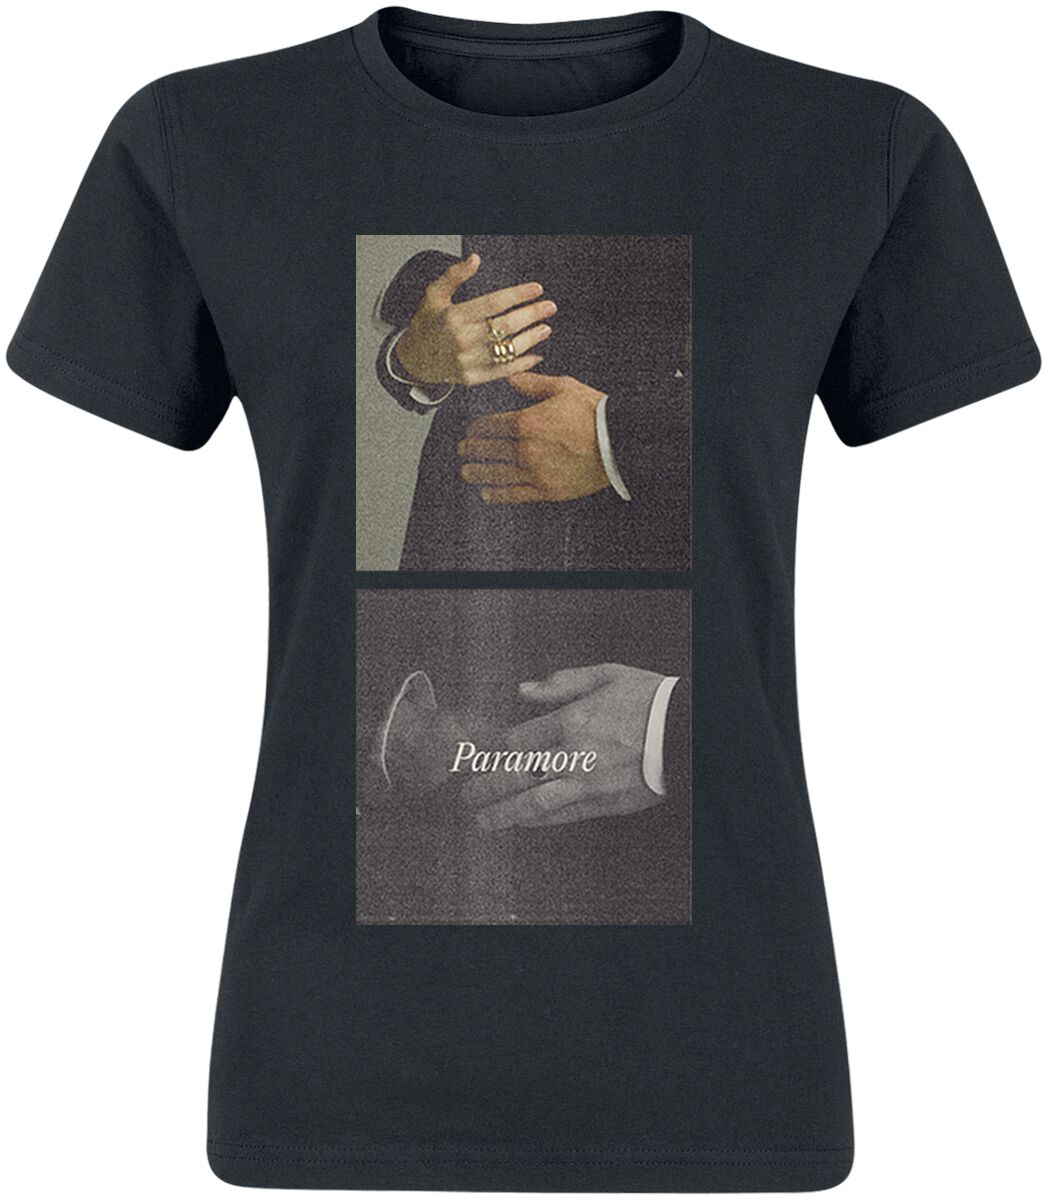 T-Shirt Manches courtes de Paramore - Group Hug Womens - S à XXL - pour Femme - noir